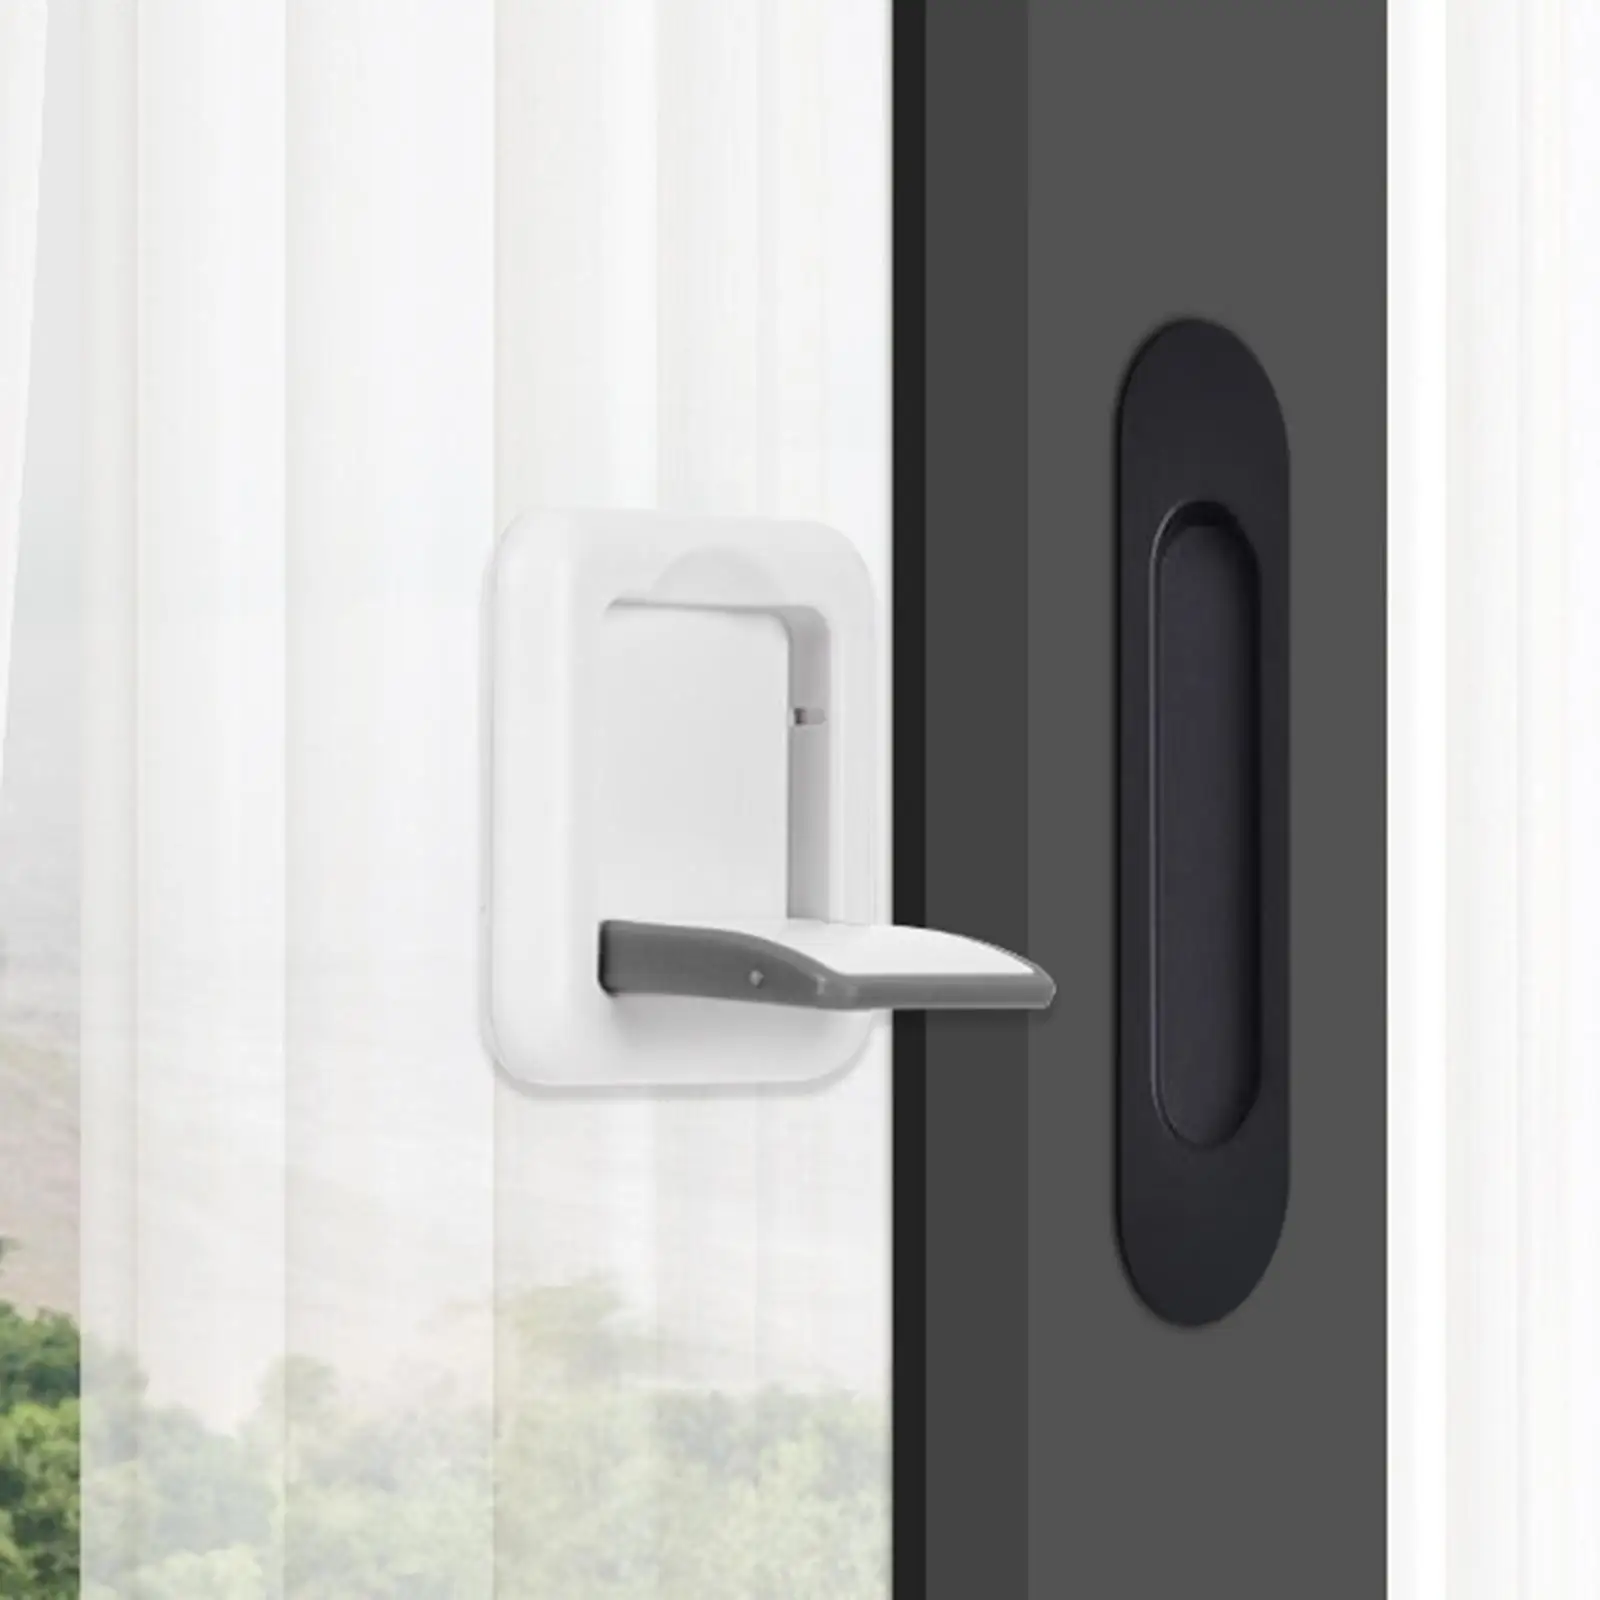 2 Pieces Sliding Door Window Locks Child Safety Locks Sliding Basement Window Lock Pull Handle